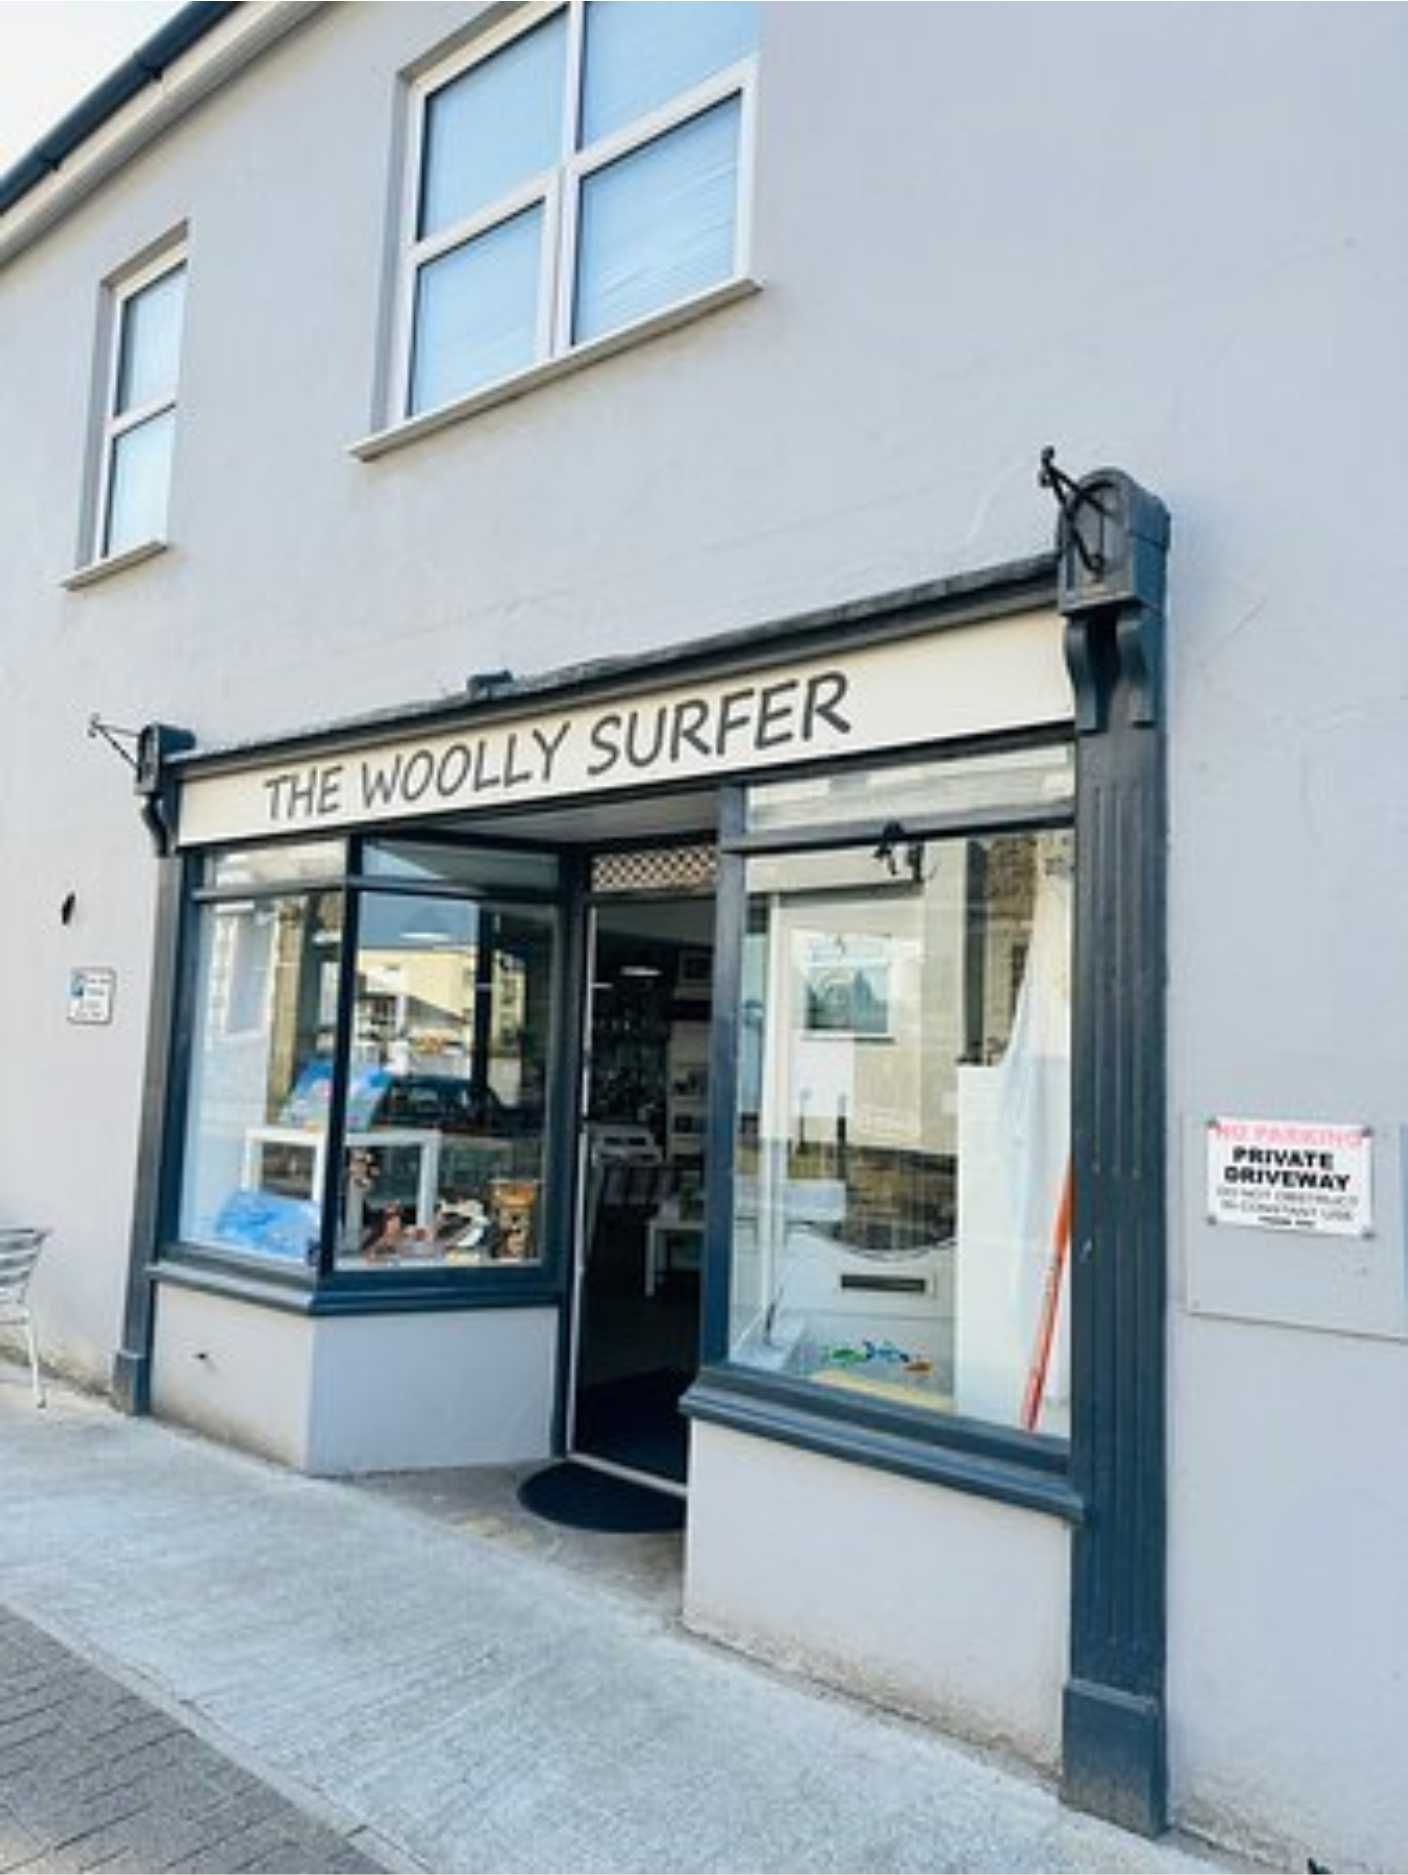 Wooly Surfer in Westward Ho! is an art cafe